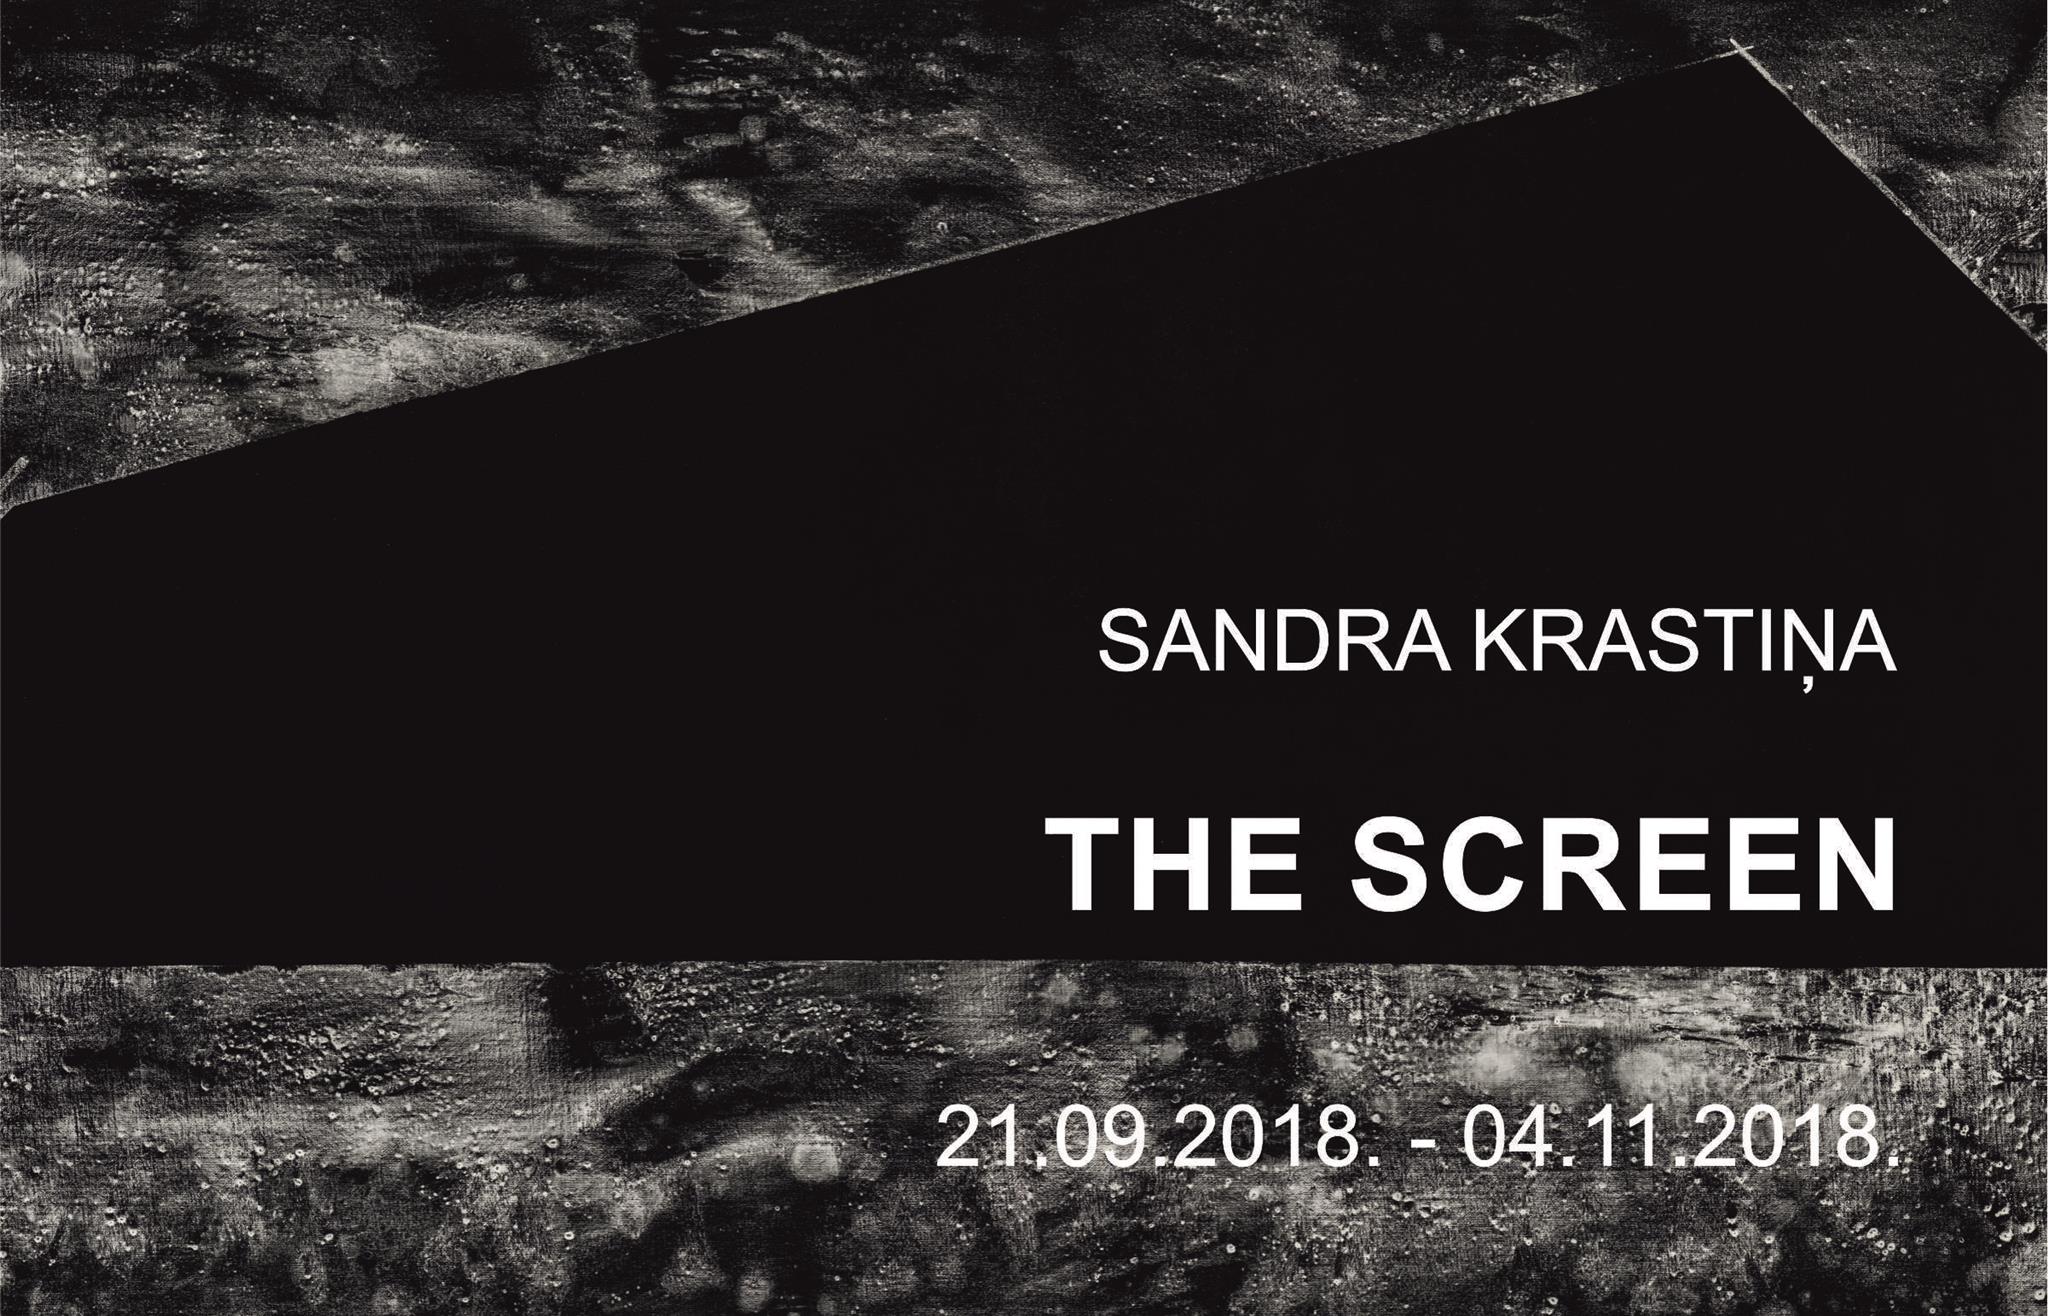 Sandra Krastiņa’s Screen